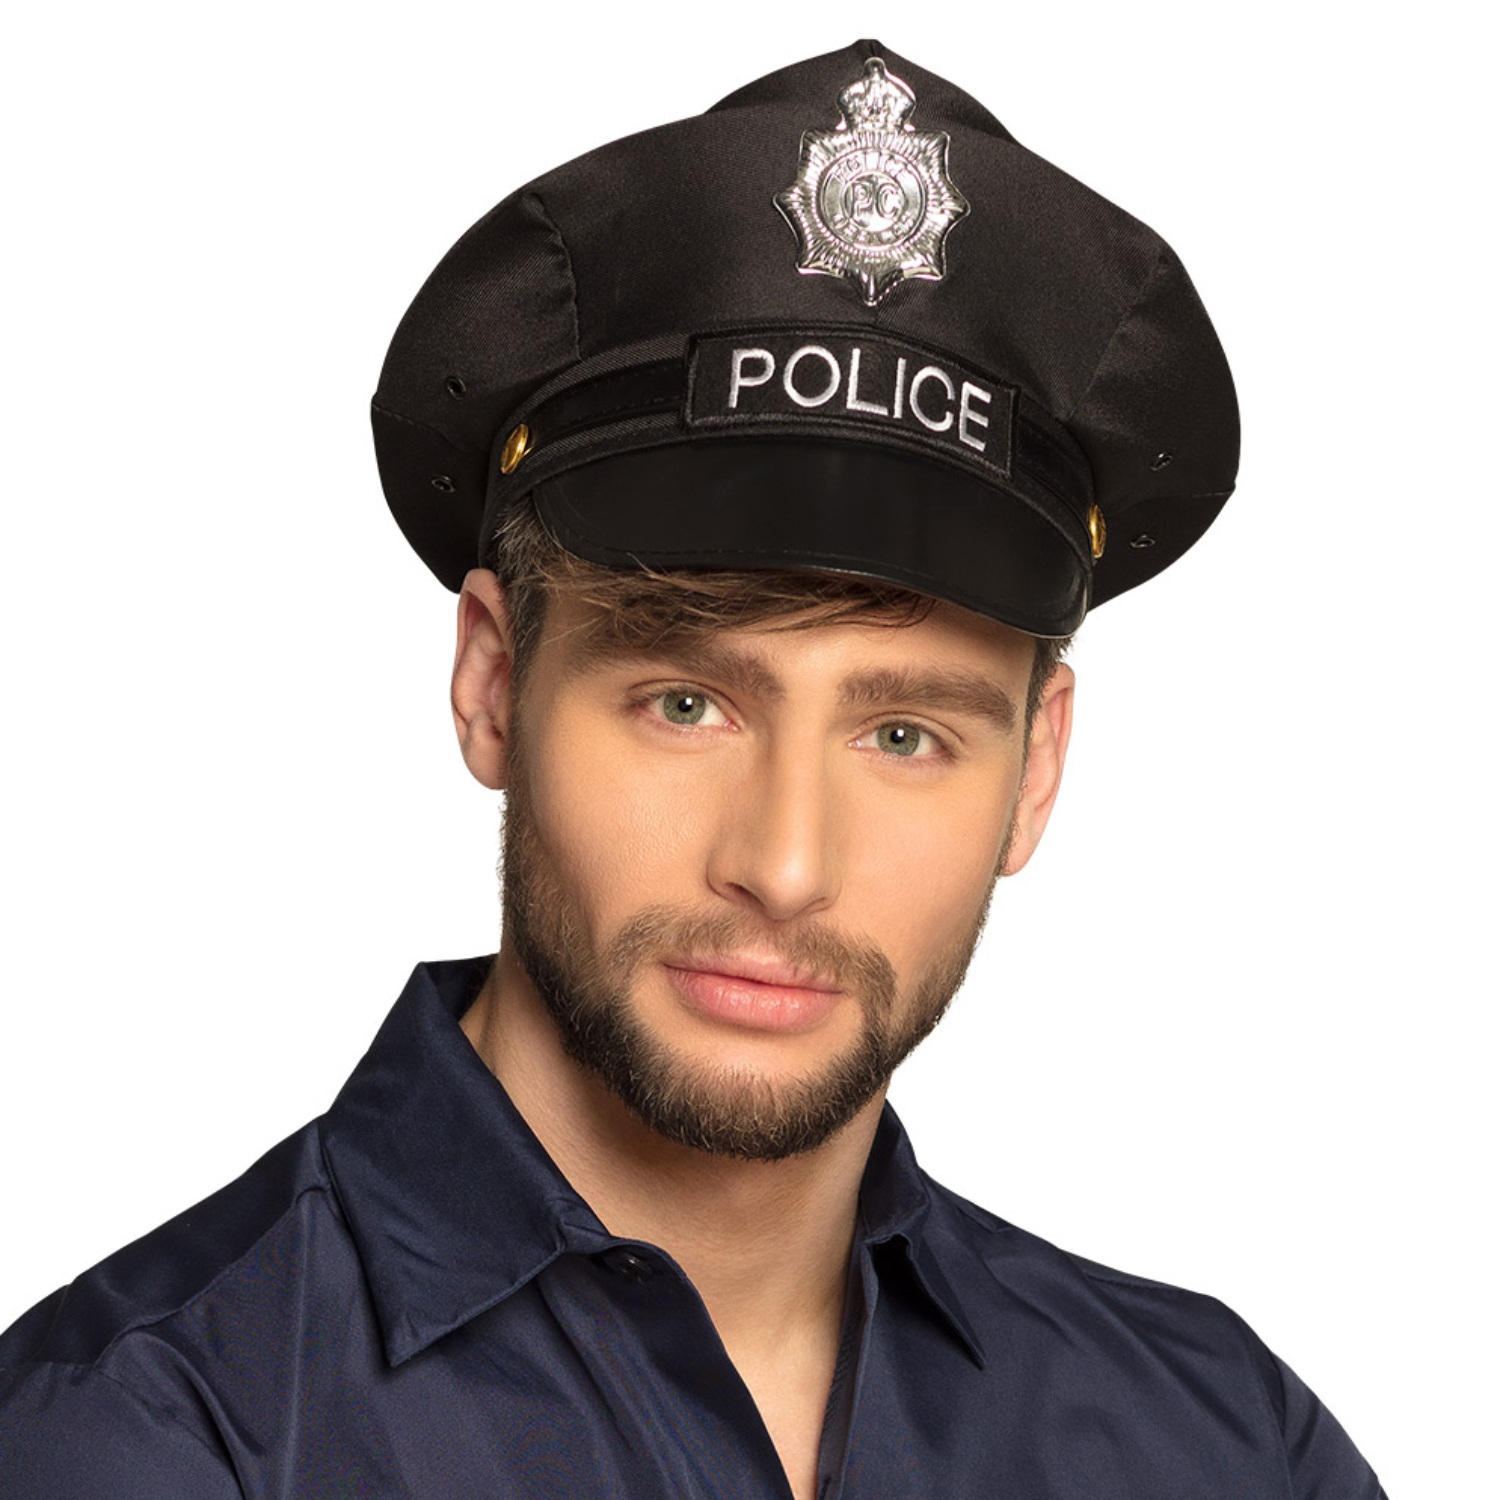 NEU Hut/Mütze Police, schwarz, größenverstellbar Bild 2